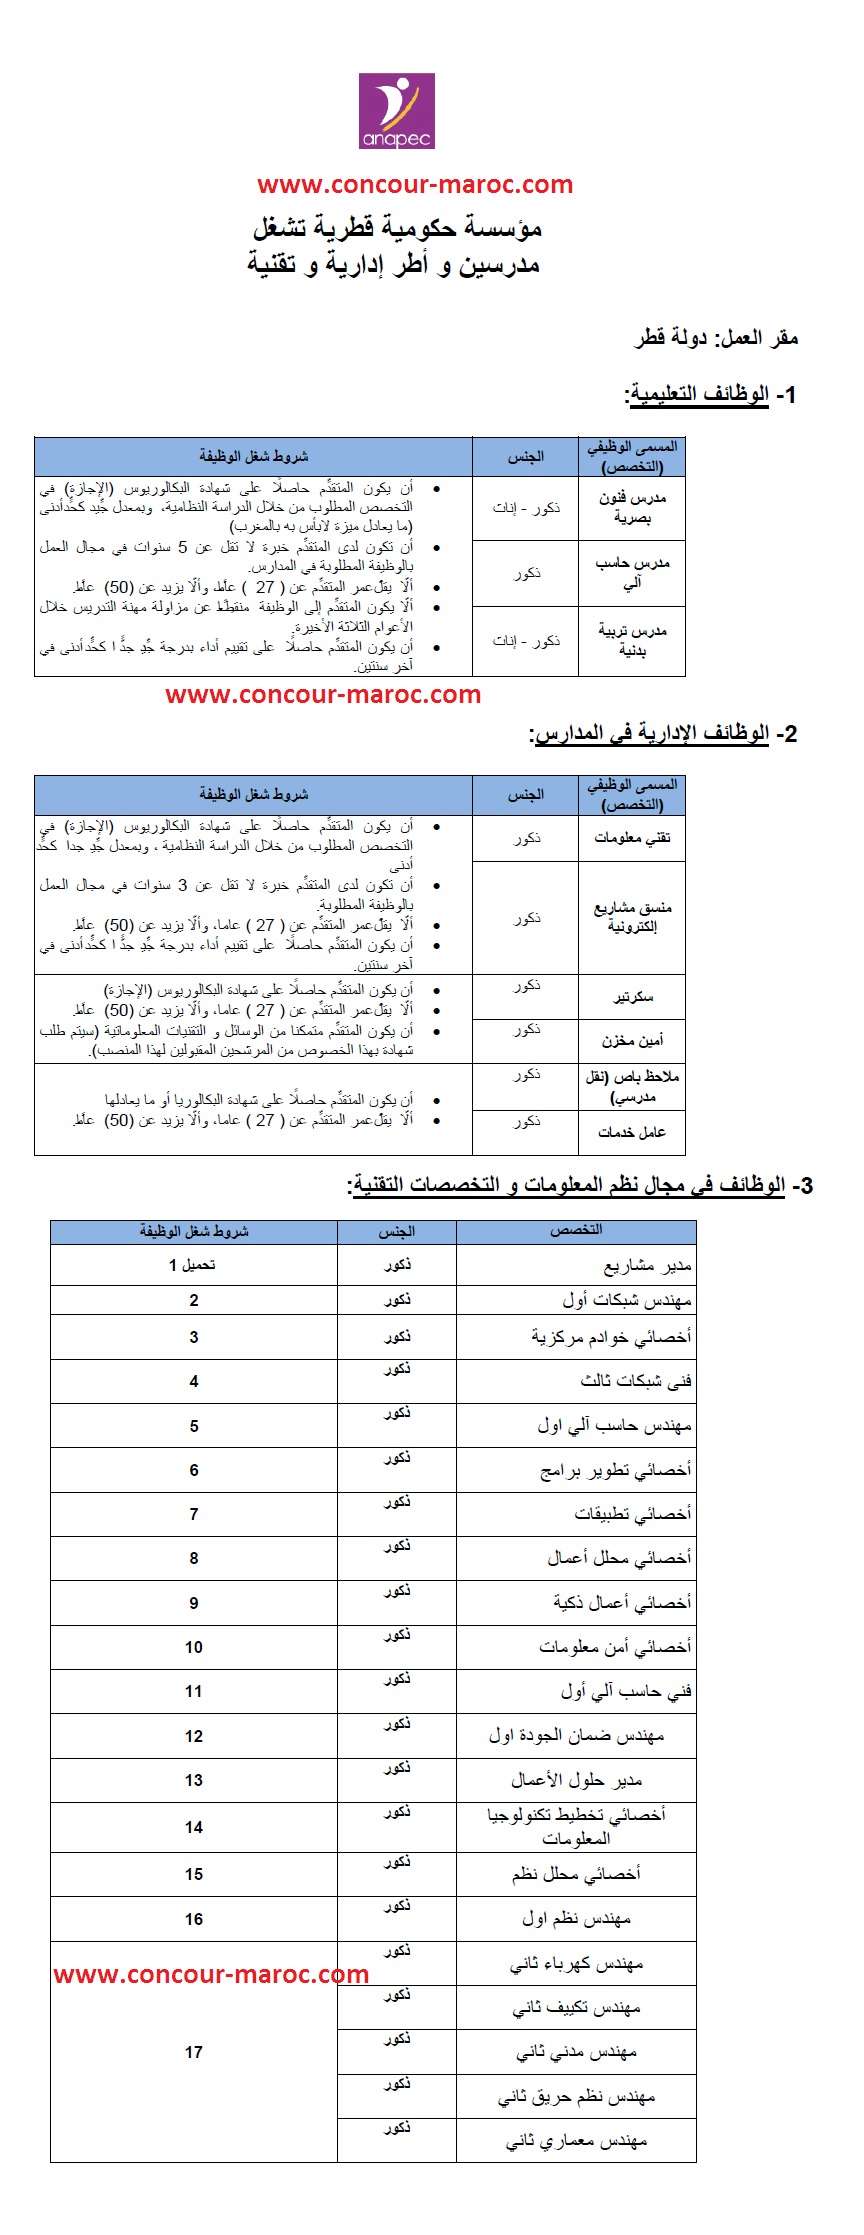 مؤسسة حكومية قطرية تُشغل مدرسين وأطر إدارية وتقنية من المغرب آخر أجل لإيداع الترشيحات 2 غشت 2017  Concou32